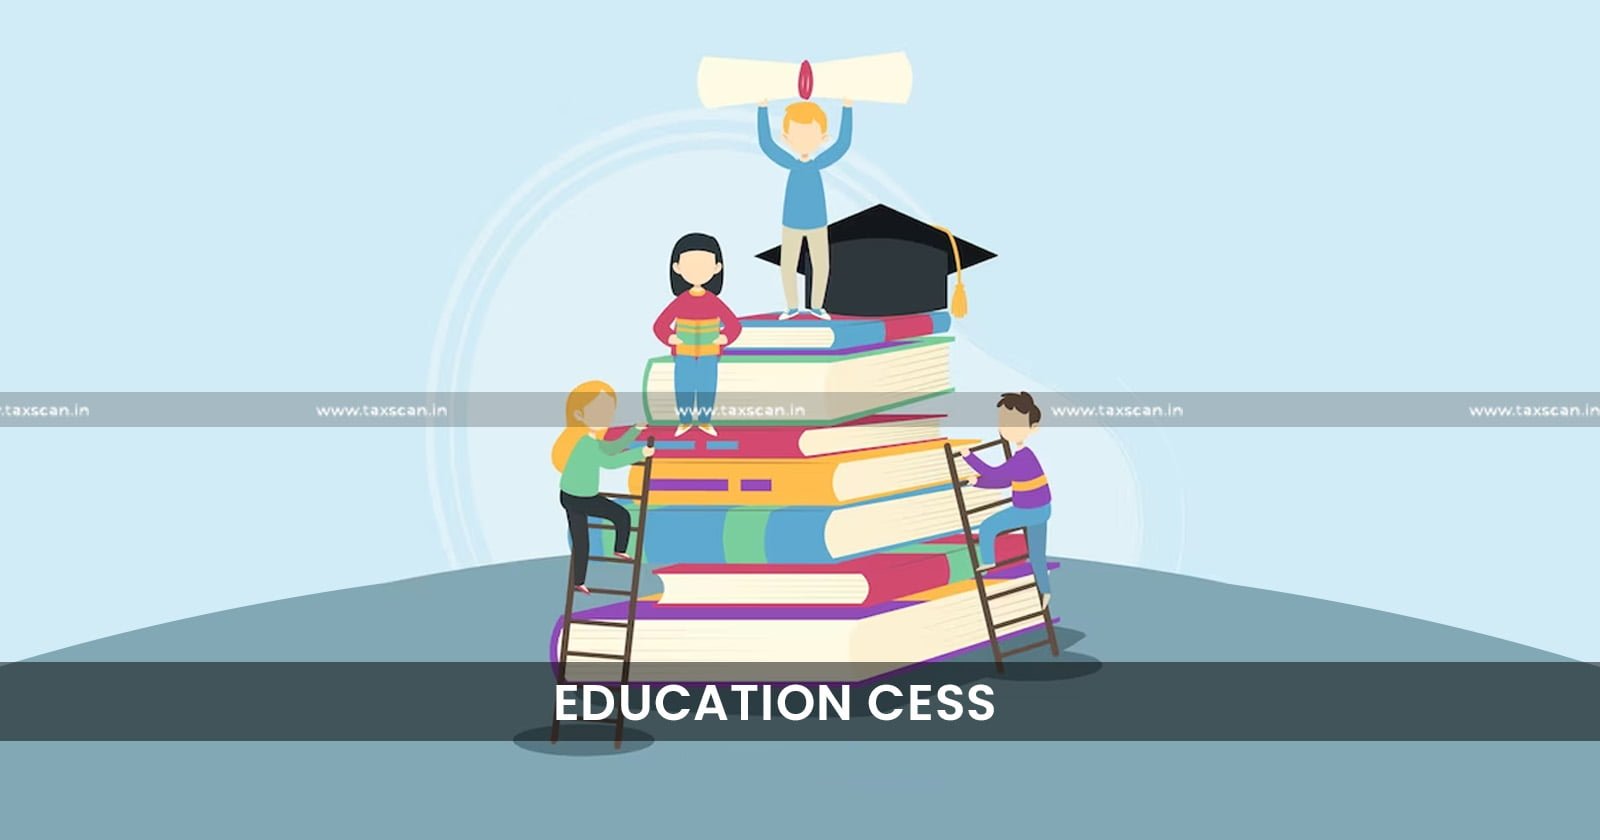 CESTAT - CESTAT Chandigarh - Education Cess - Excise Duty - Cess - TAXSCAN